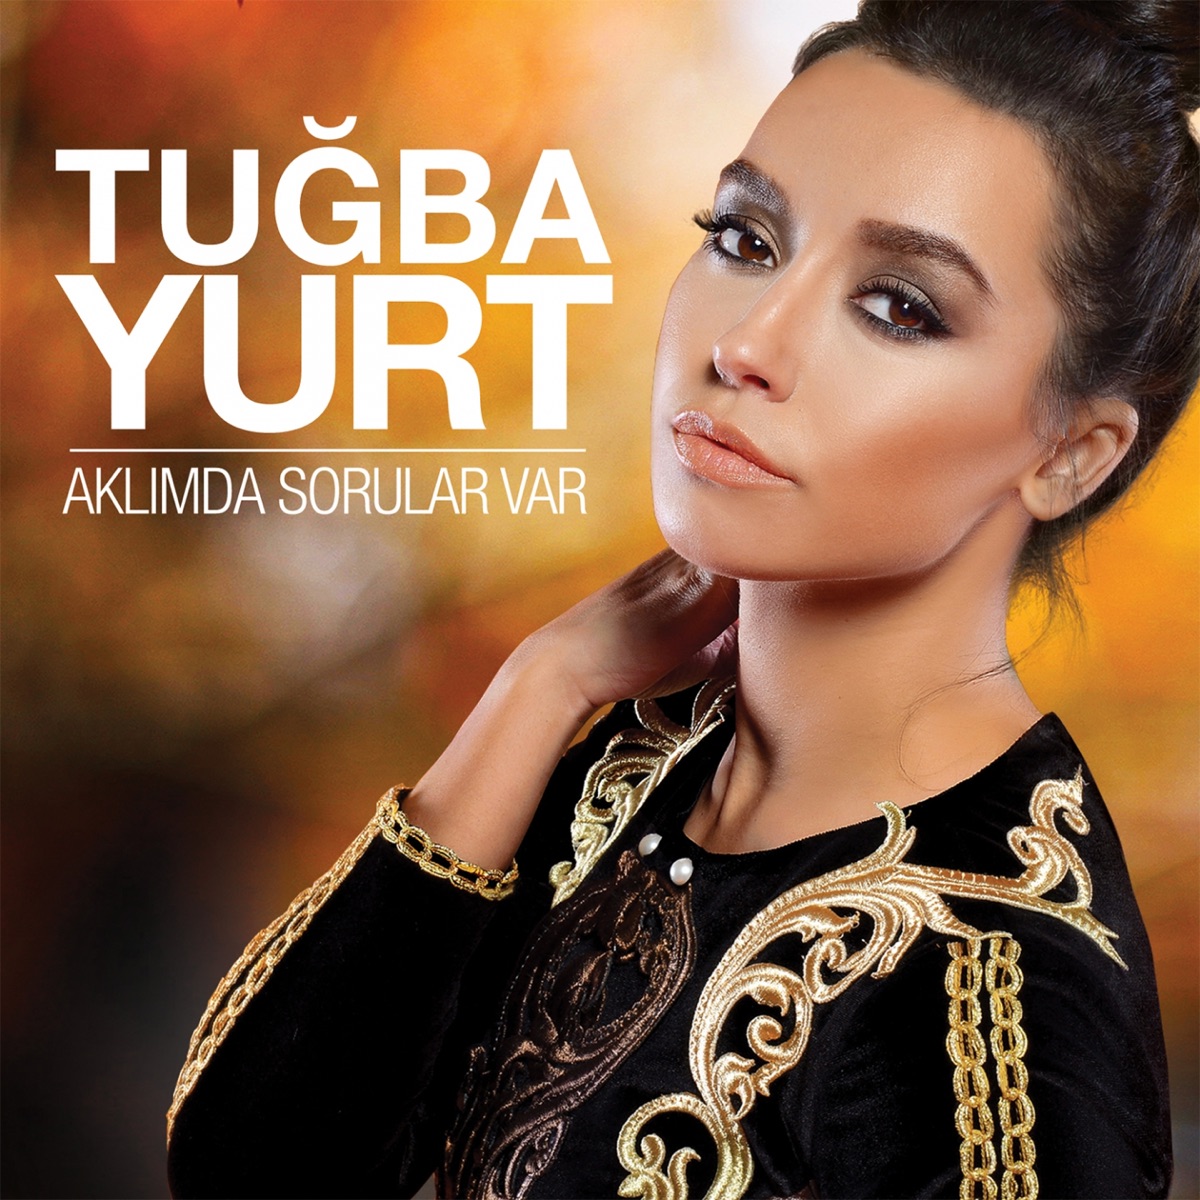 Aklımda Sorular Var - Single” álbum de Tuğba Yurt en Apple Music